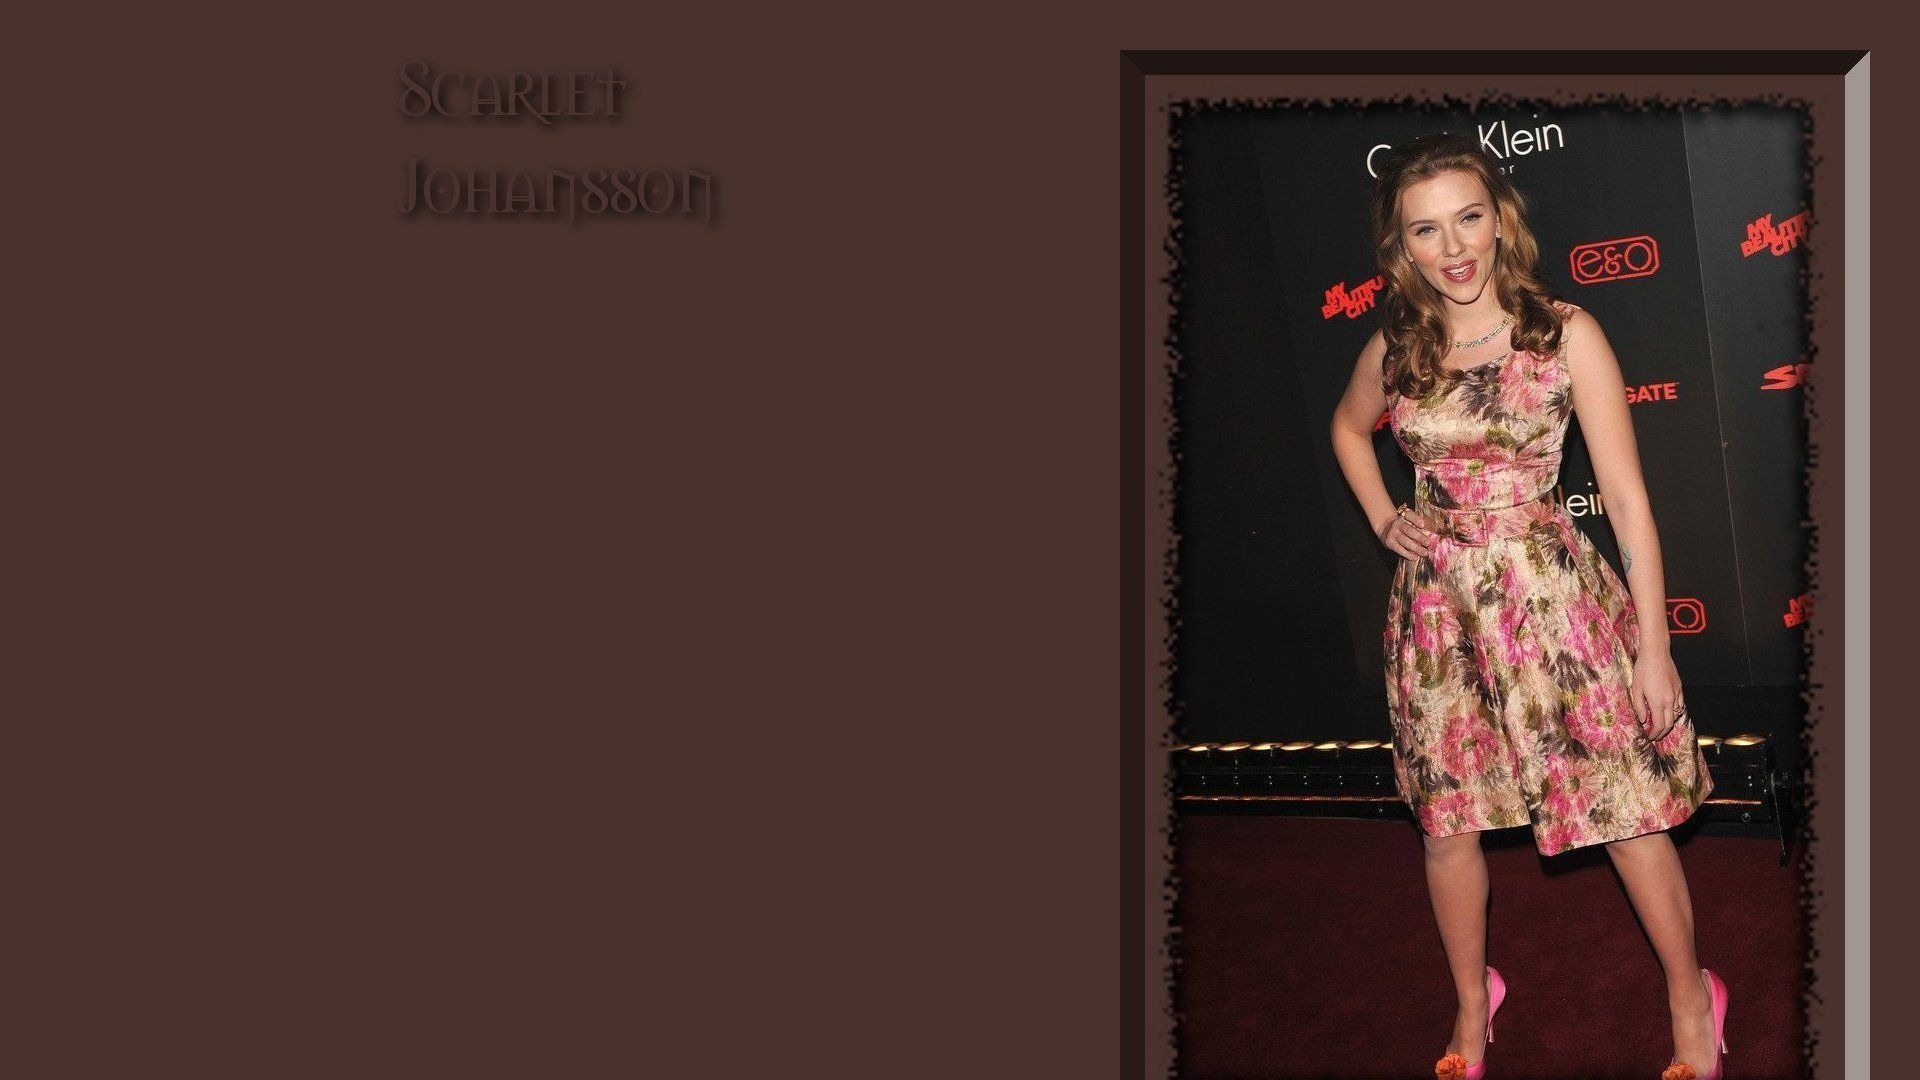 Scarlett Johansson 斯嘉丽·约翰逊 美女壁纸3 - 1920x1080